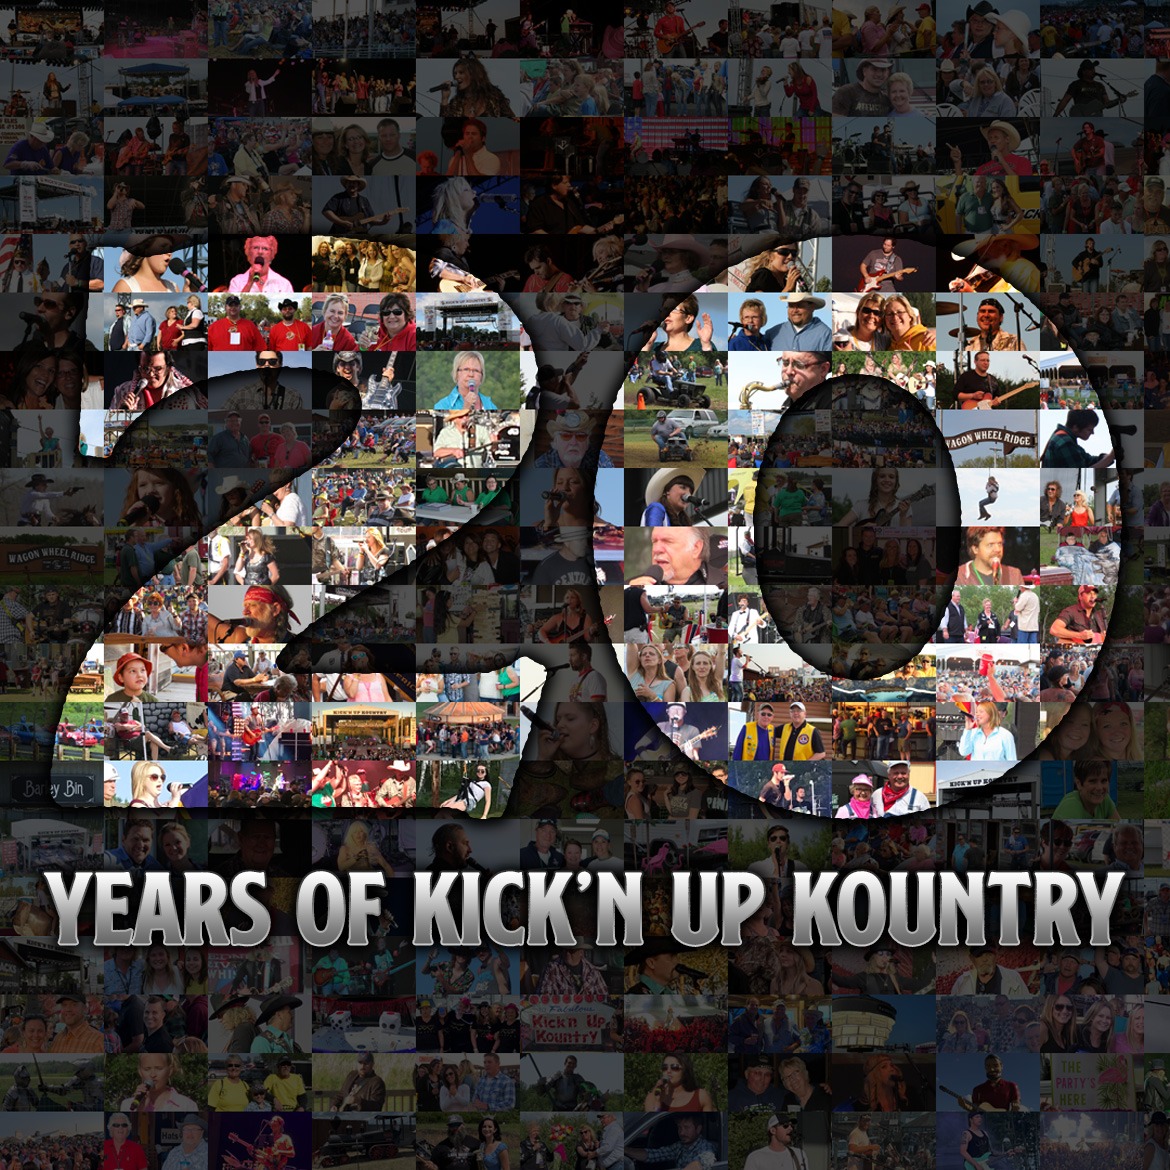 20 Years of KUK